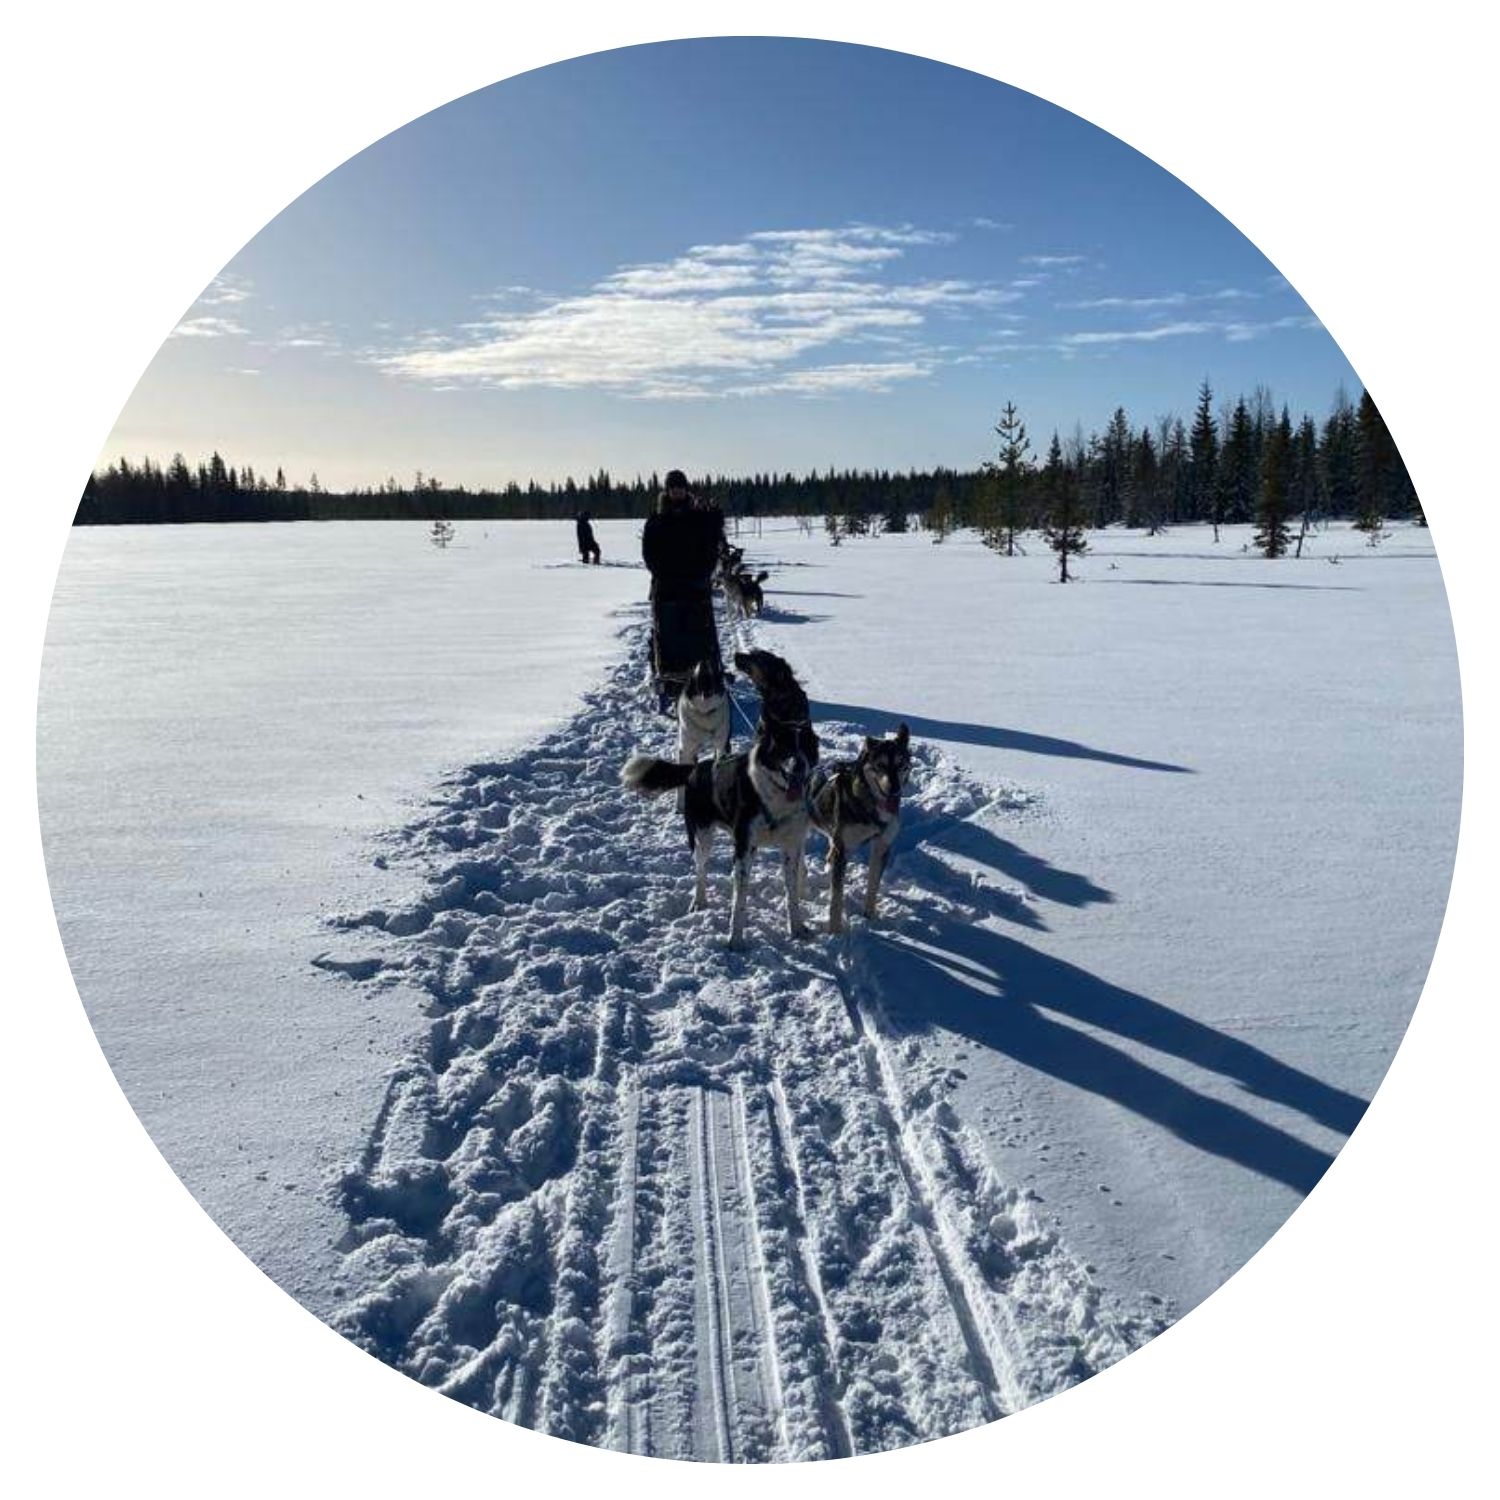 Jeune homme avec ses chiens sur une montagne enneigée en Finlande, illustrant l'aventure et la complicité avec les animaux dans ce pays nordique.